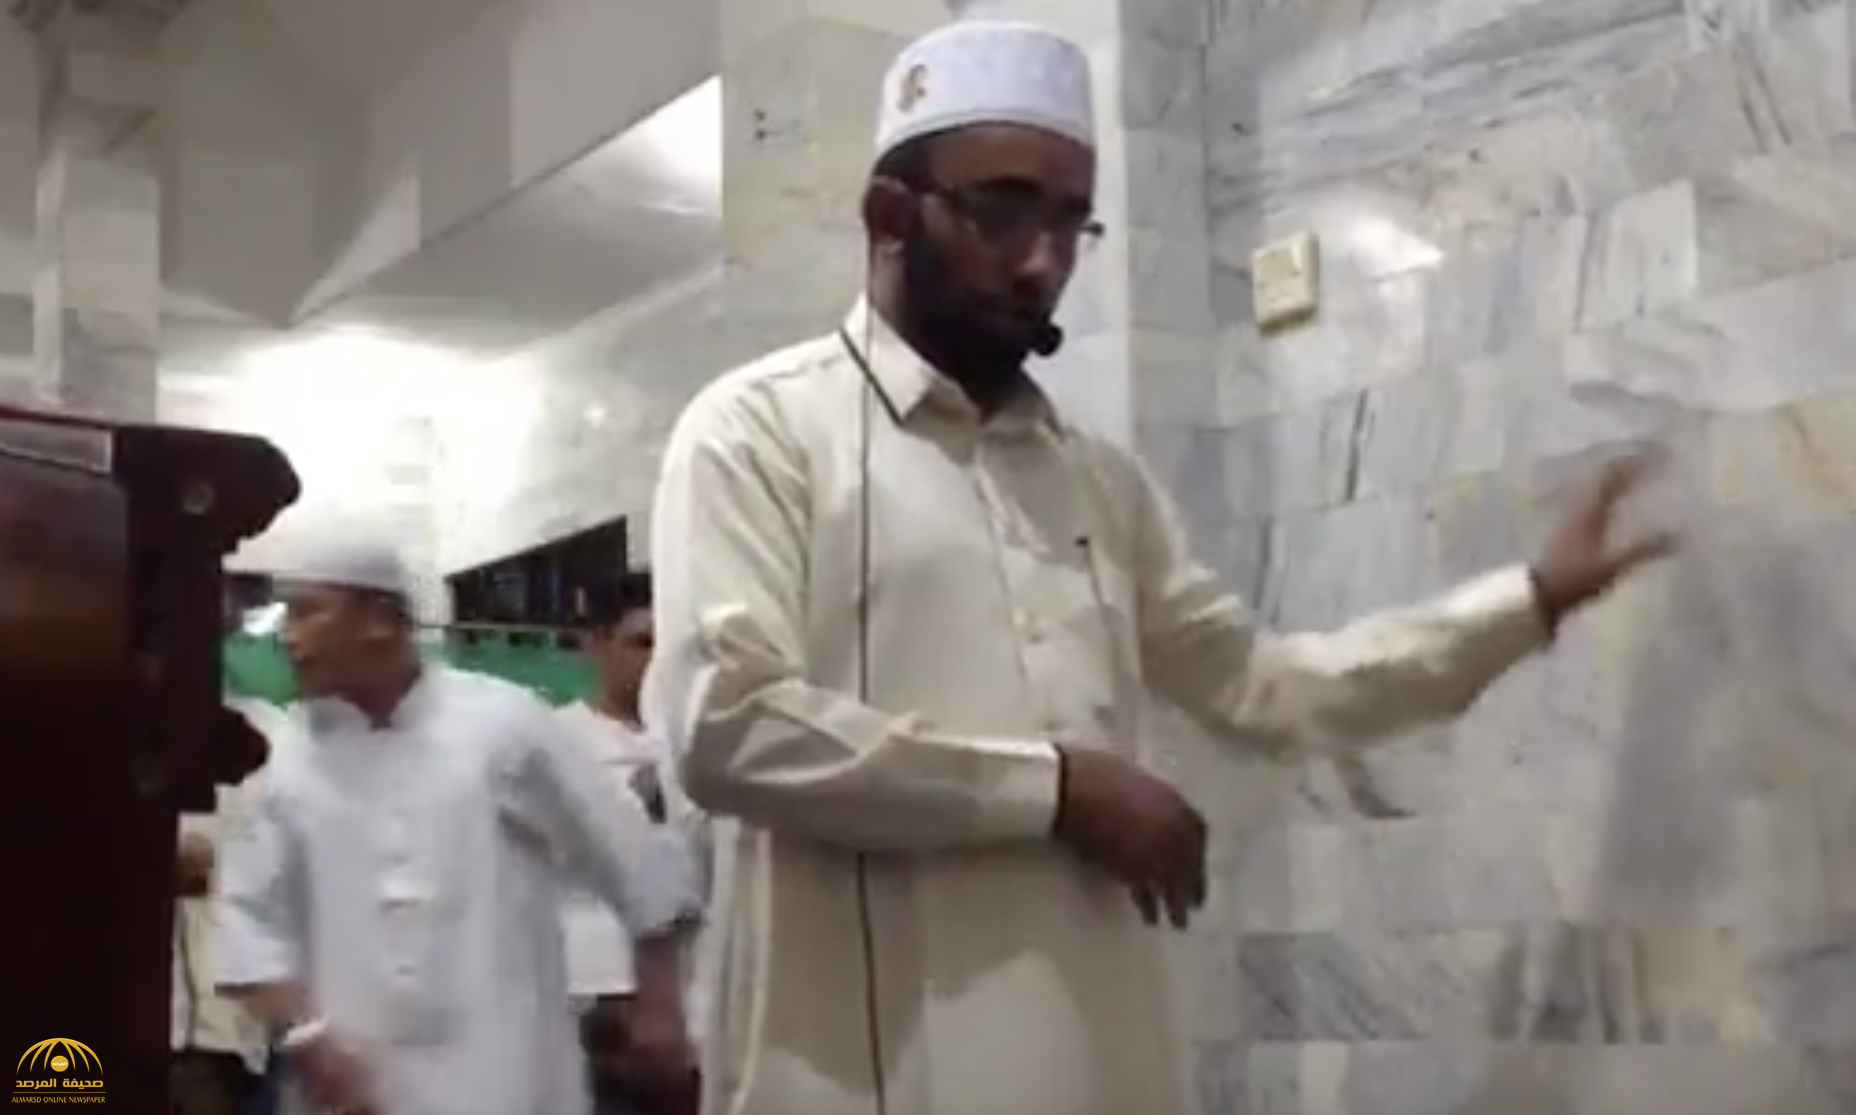 شاهد .. لحظة هروب المصلين أثناء وقوع زلزال في إندونيسيا وثبات الإمام!